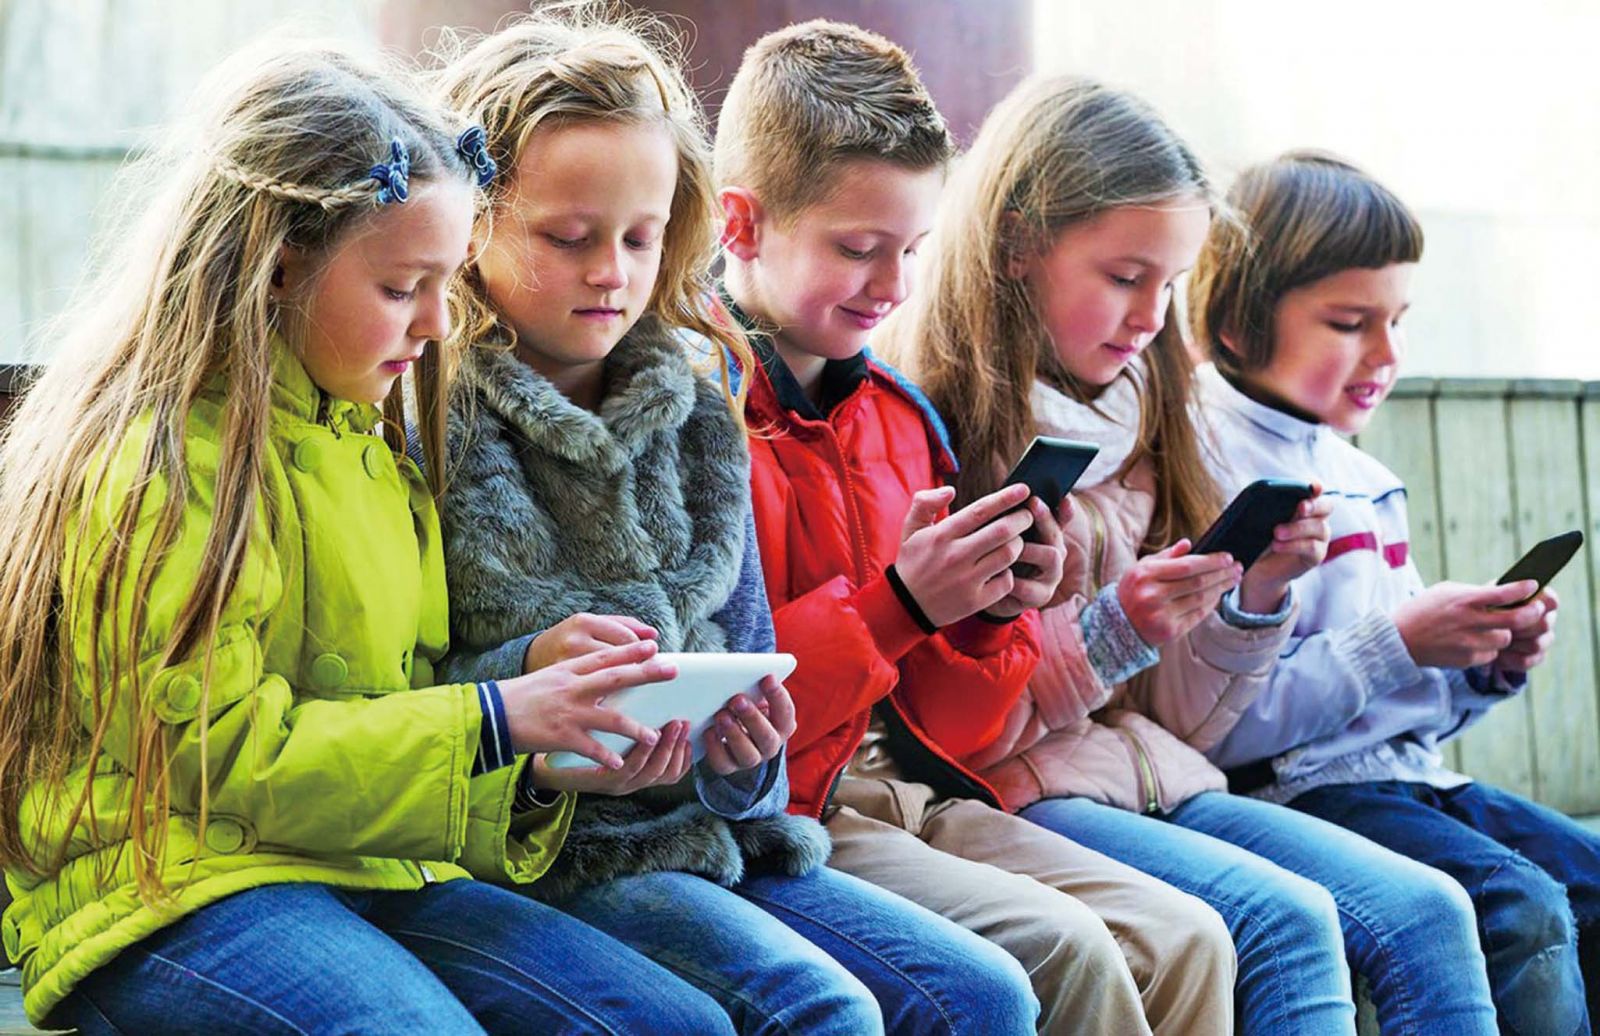 中小學生在校禁用手機